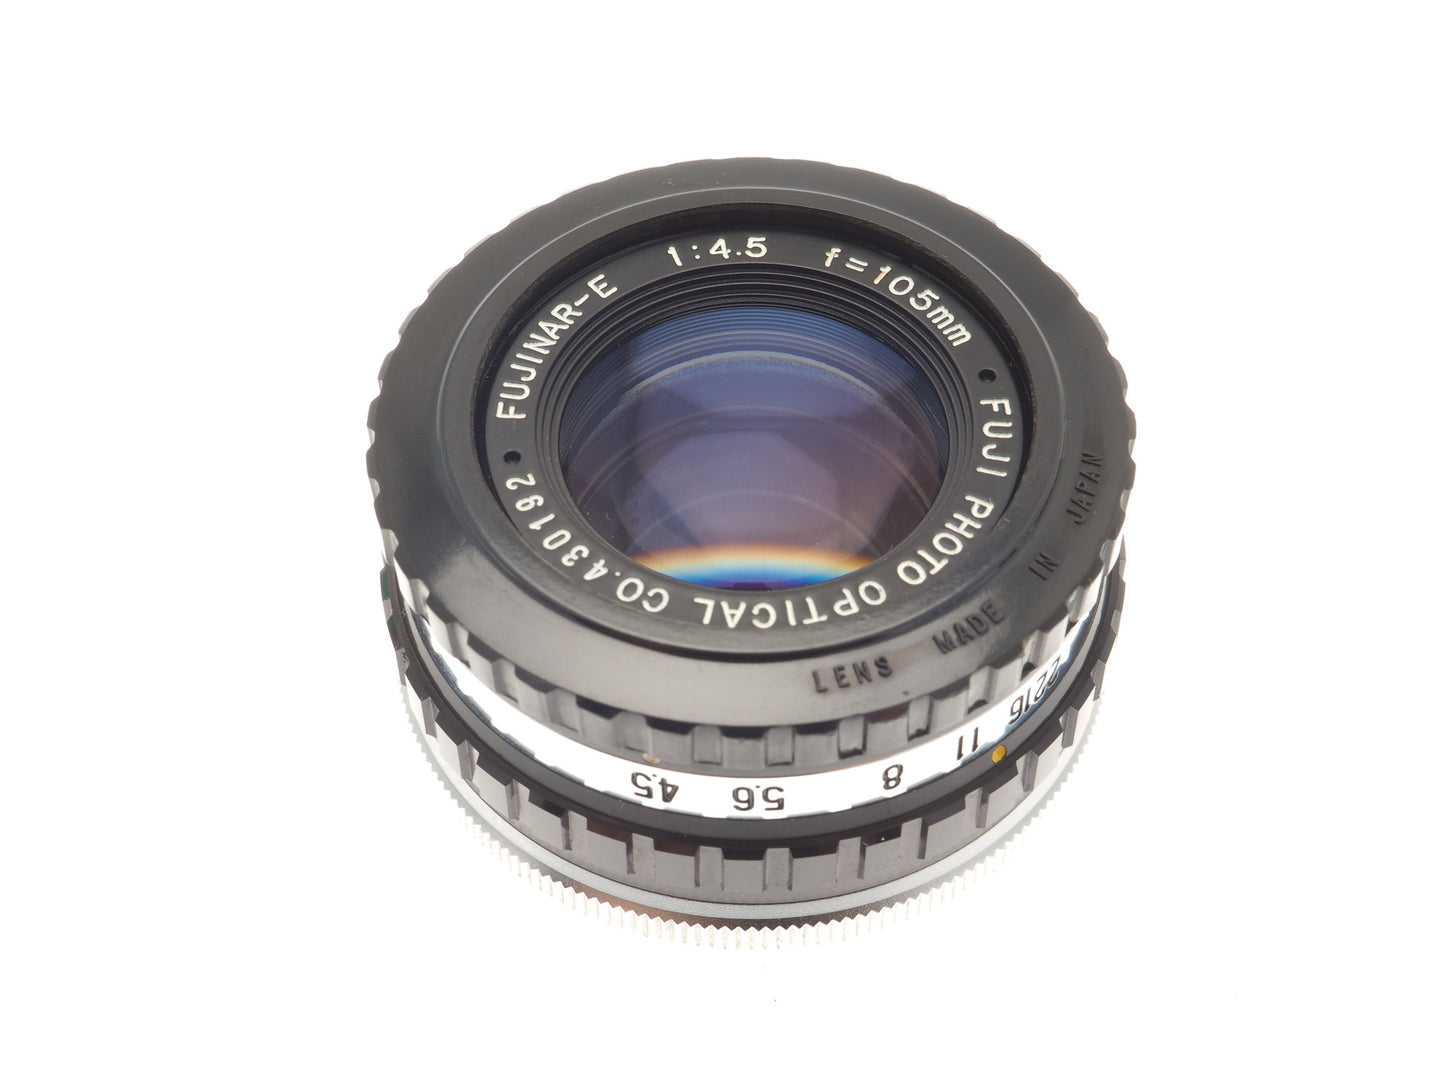 Fuji 105mm f4.5 Fujinar-E - Lens